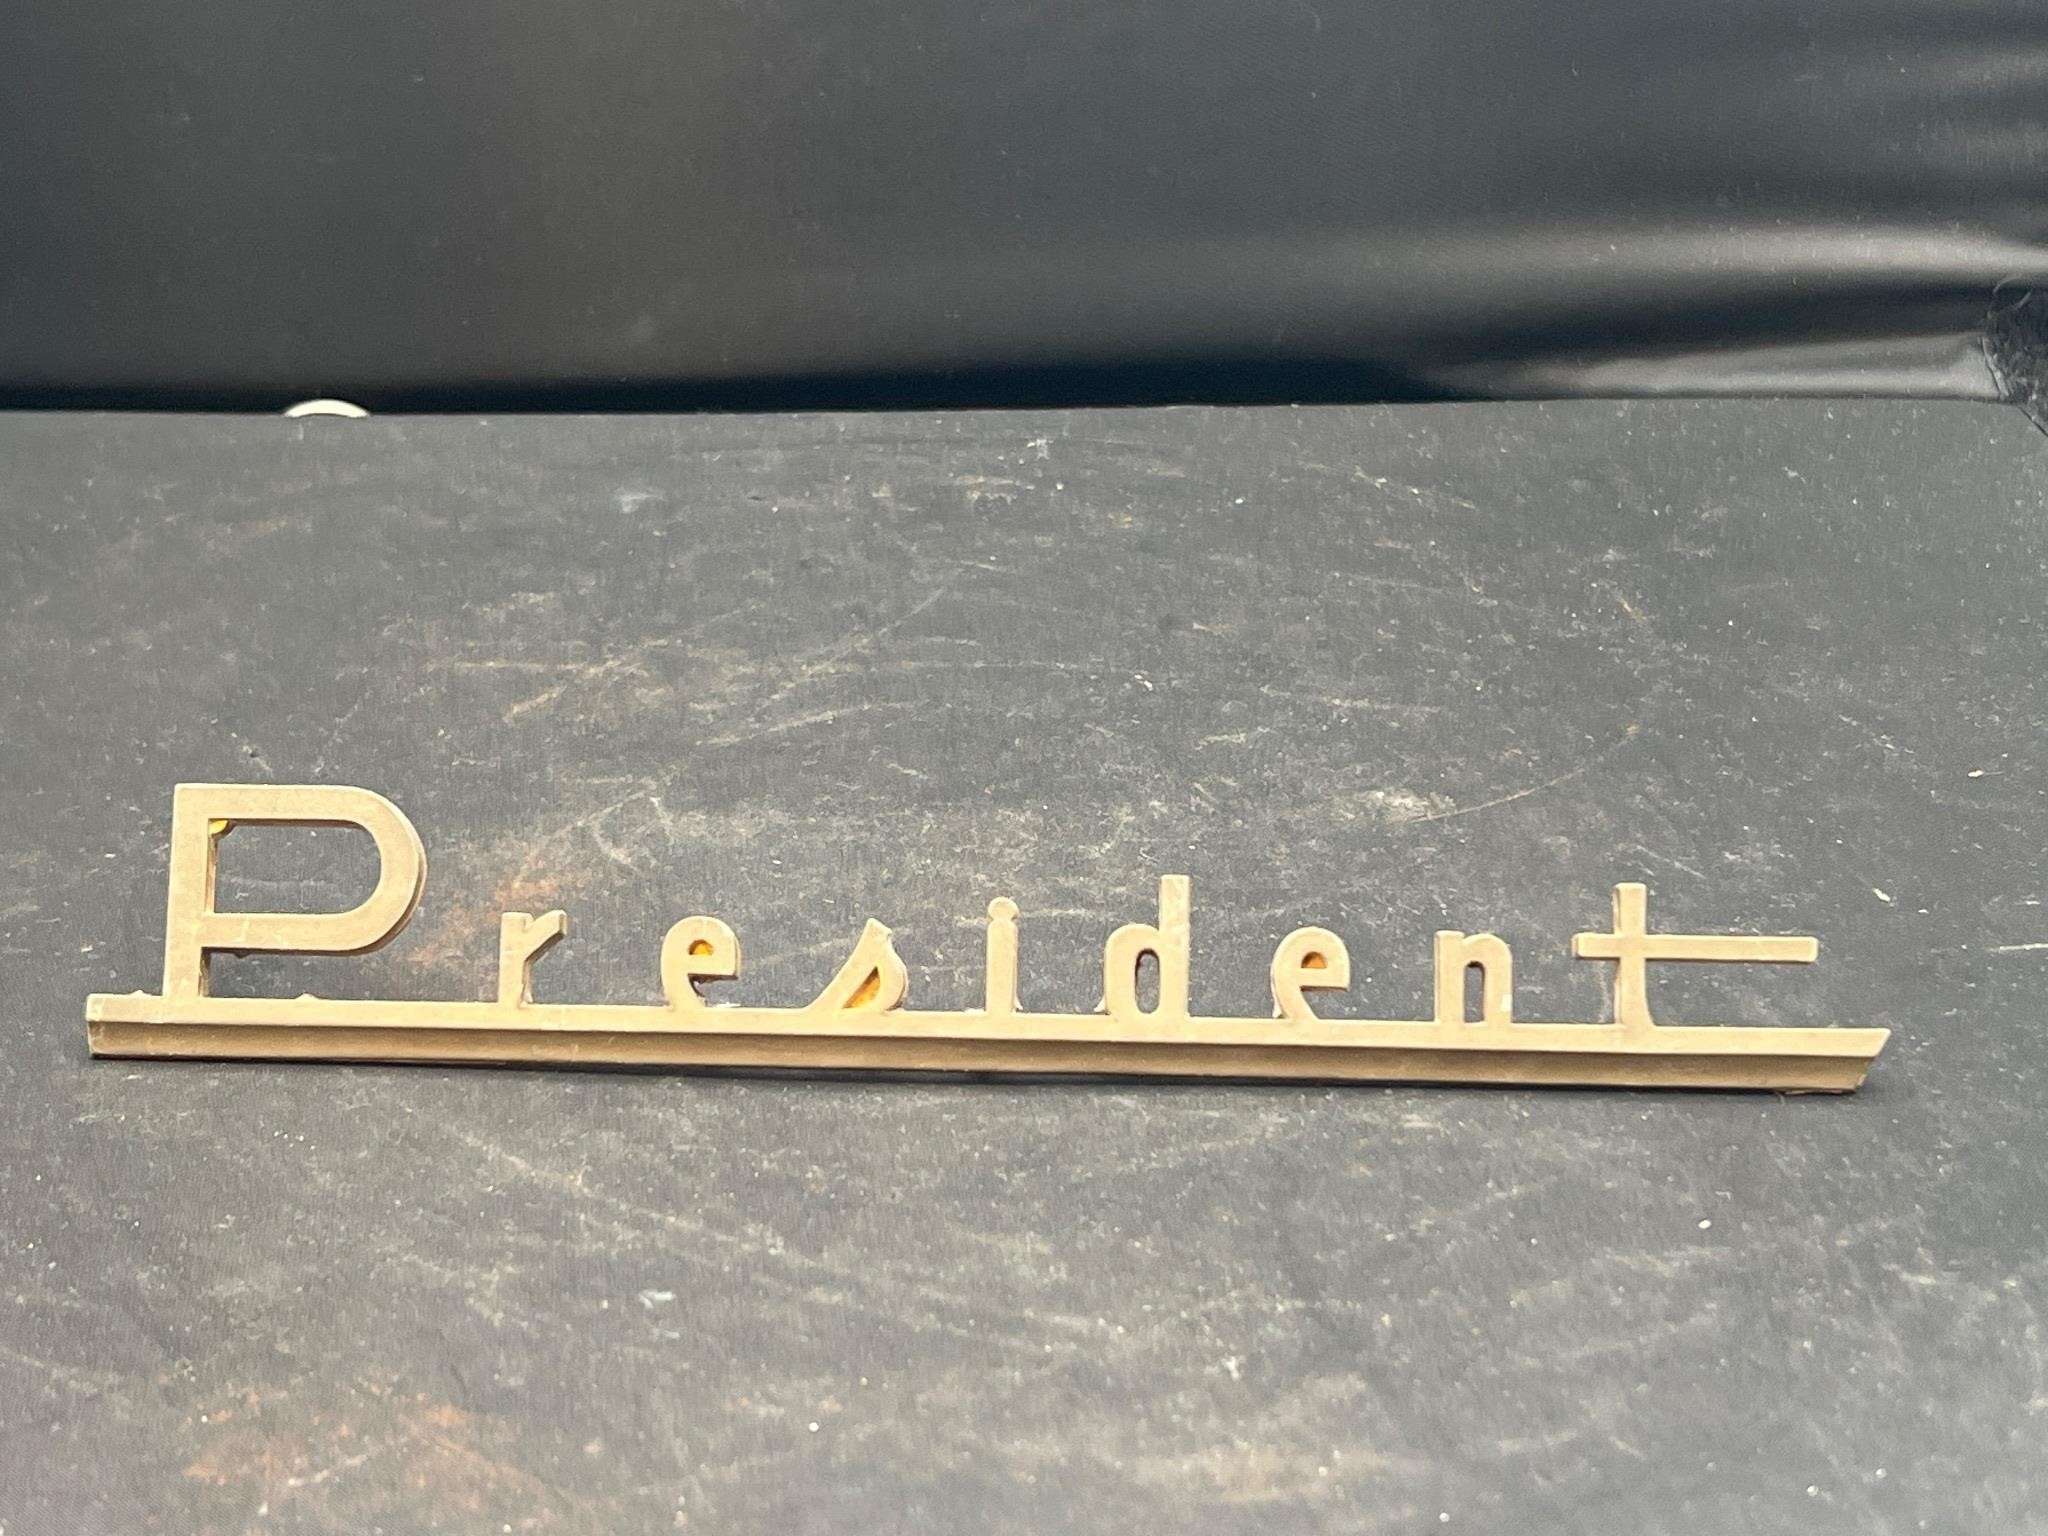 Vintage President emblem